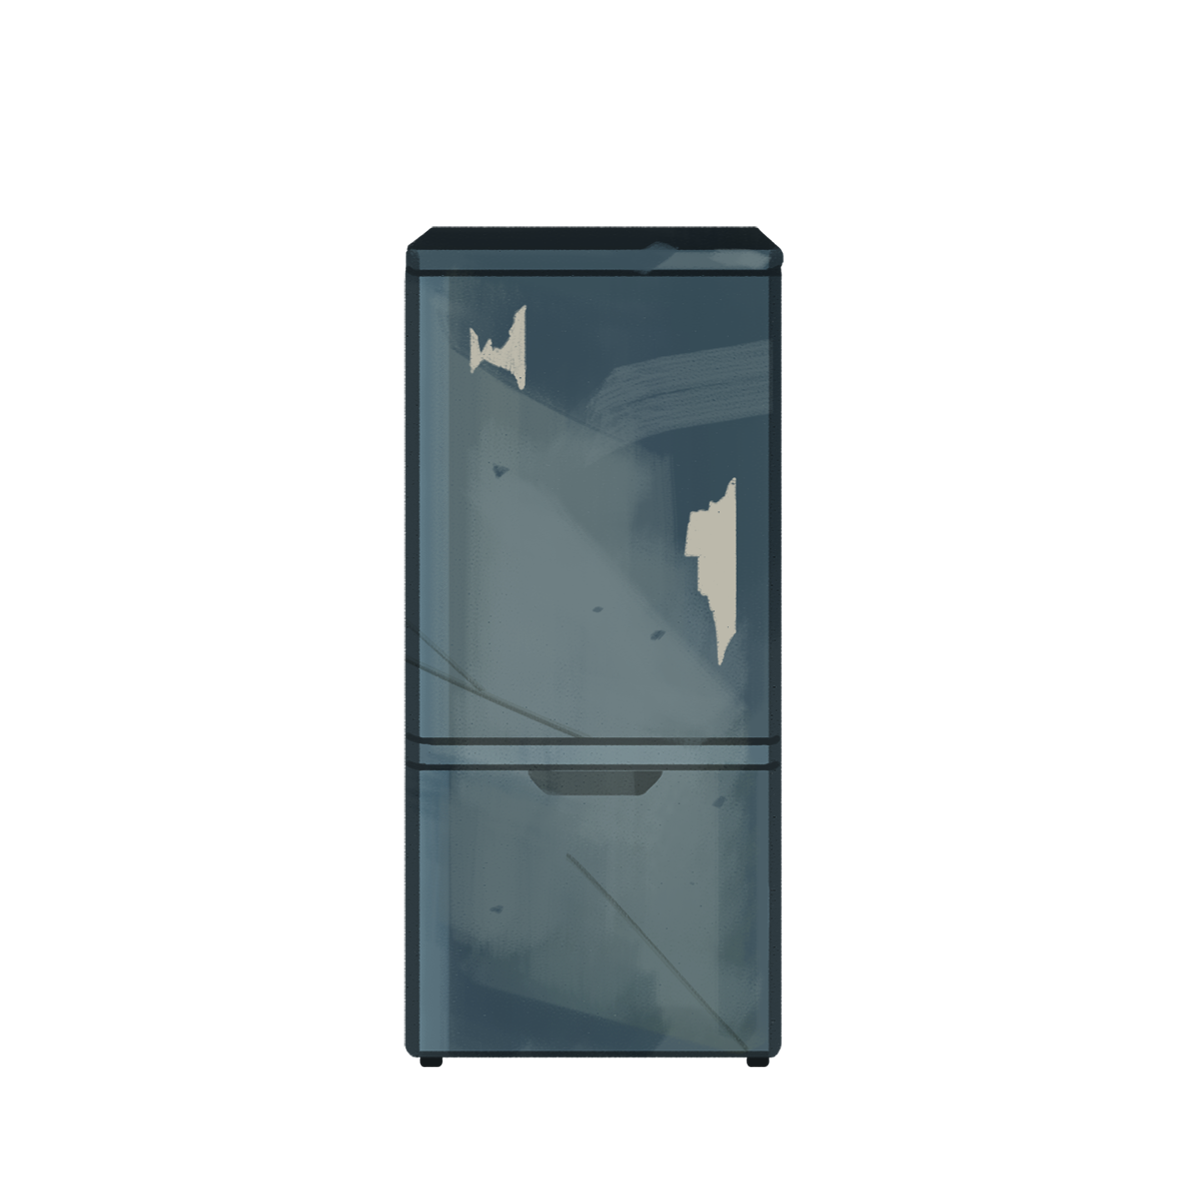 壊れた青い冷蔵庫のイラスト エコのモト